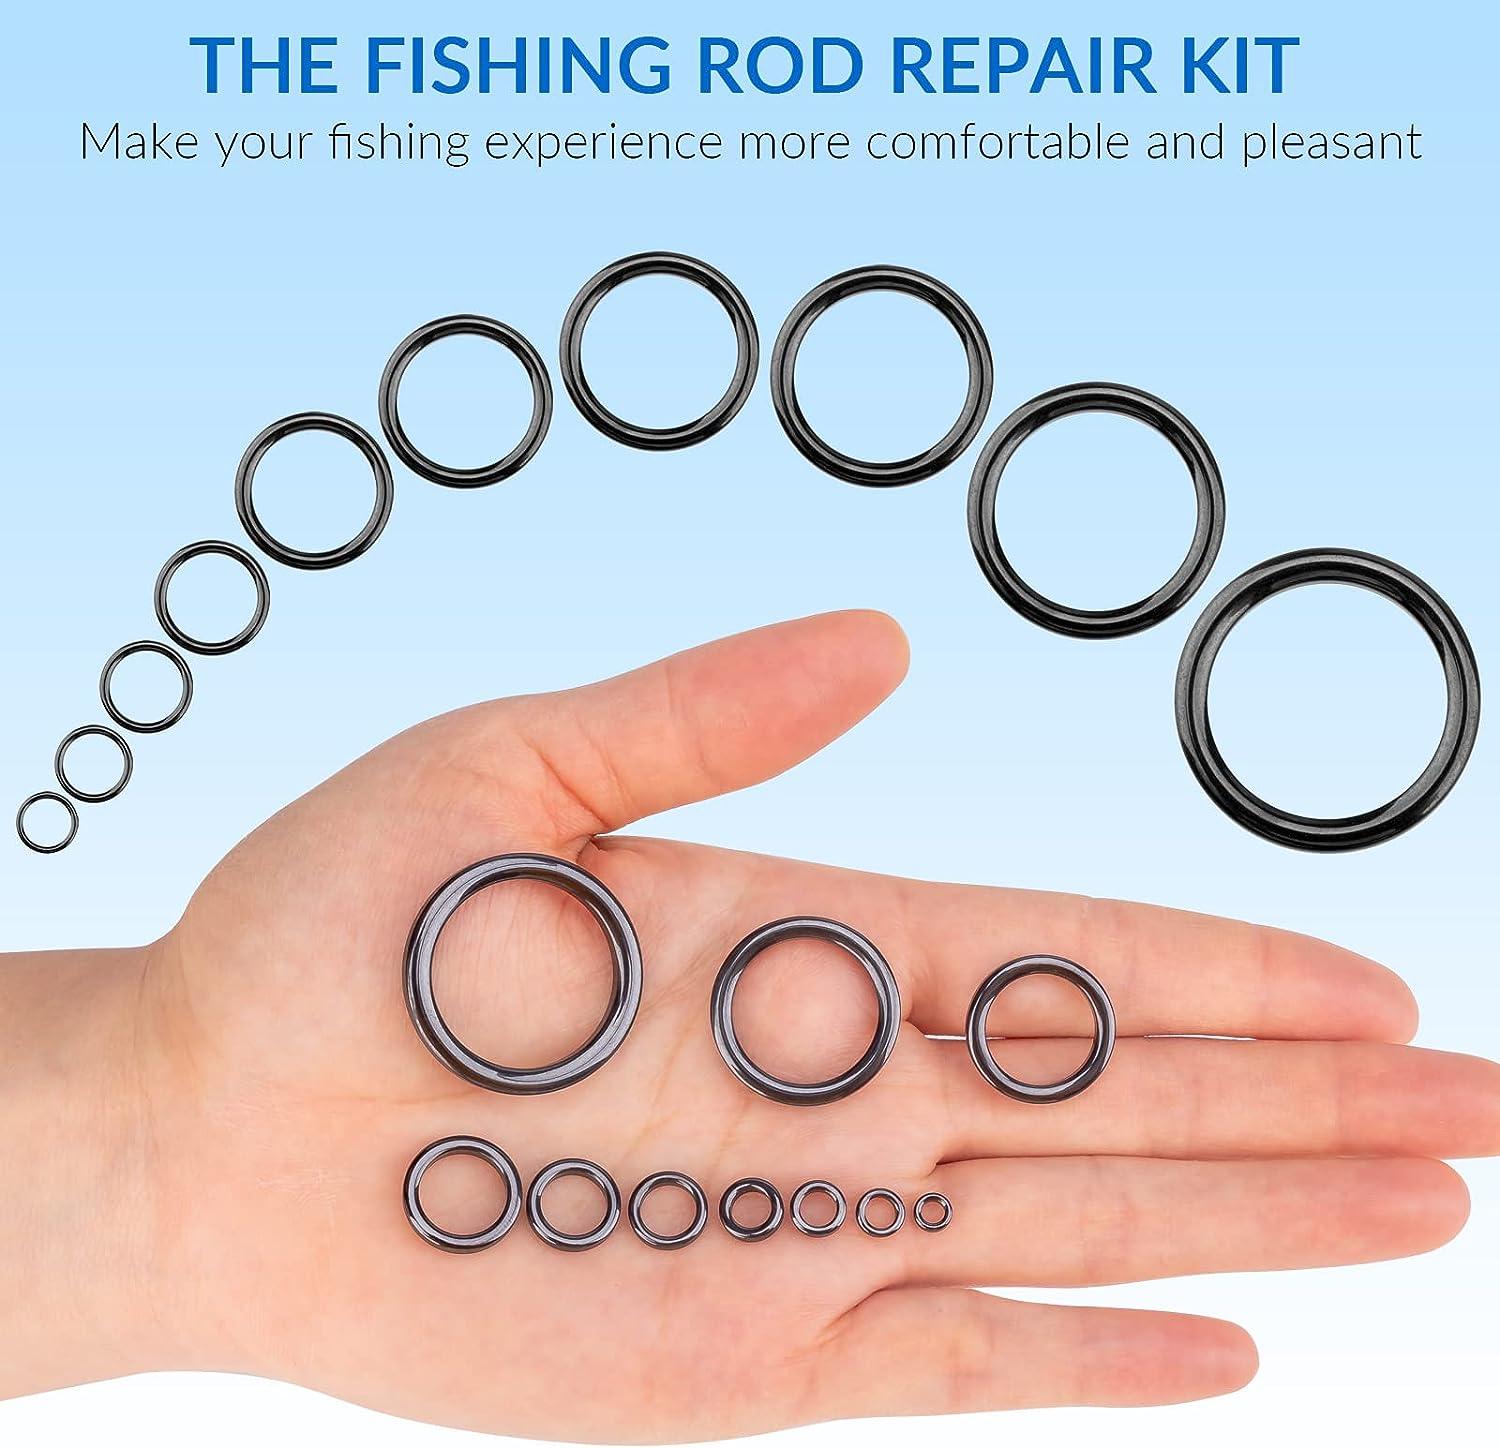 THKFISH Rod Repair Kit Rod Tip Repair Kit Ceramics Tips Stainless